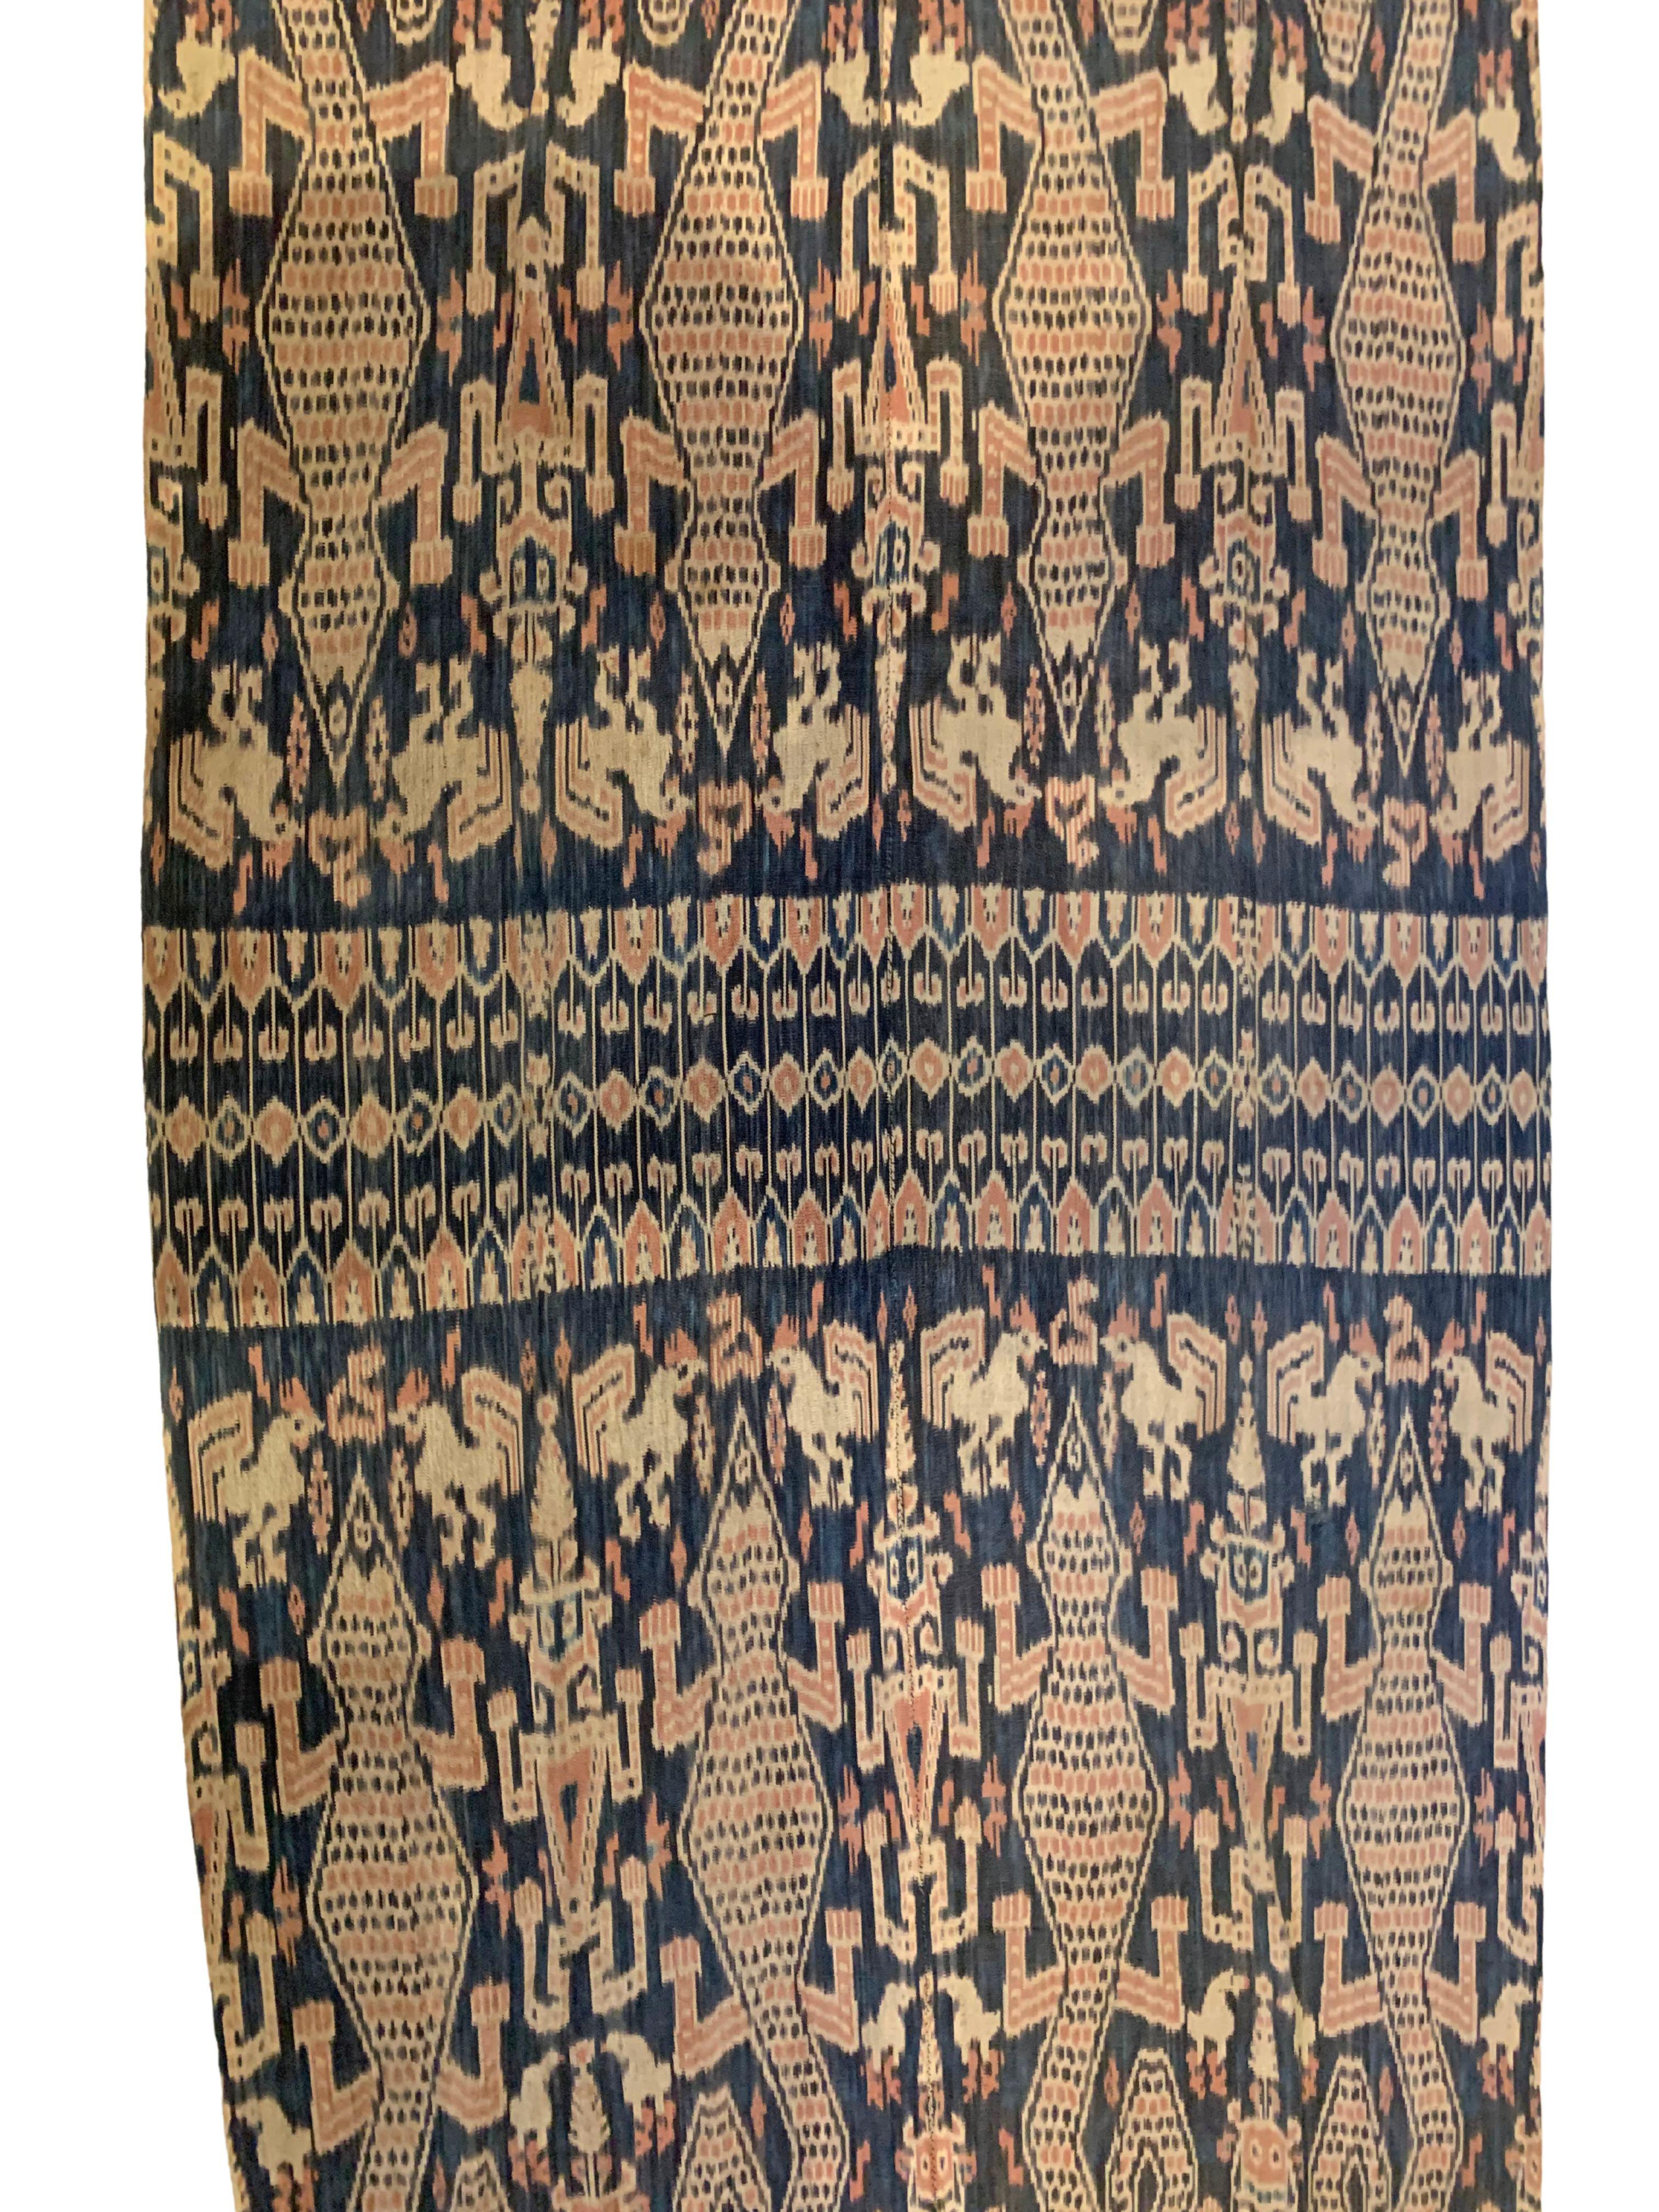 Dieses Ikat-Textil stammt von der Insel Sumba in Indonesien. Es wird mit natürlich gefärbten Garnen nach einer seit Generationen überlieferten Methode handgewebt. Es zeigt eine atemberaubende Vielfalt von Stammesmustern und -motiven. Einzigartig an